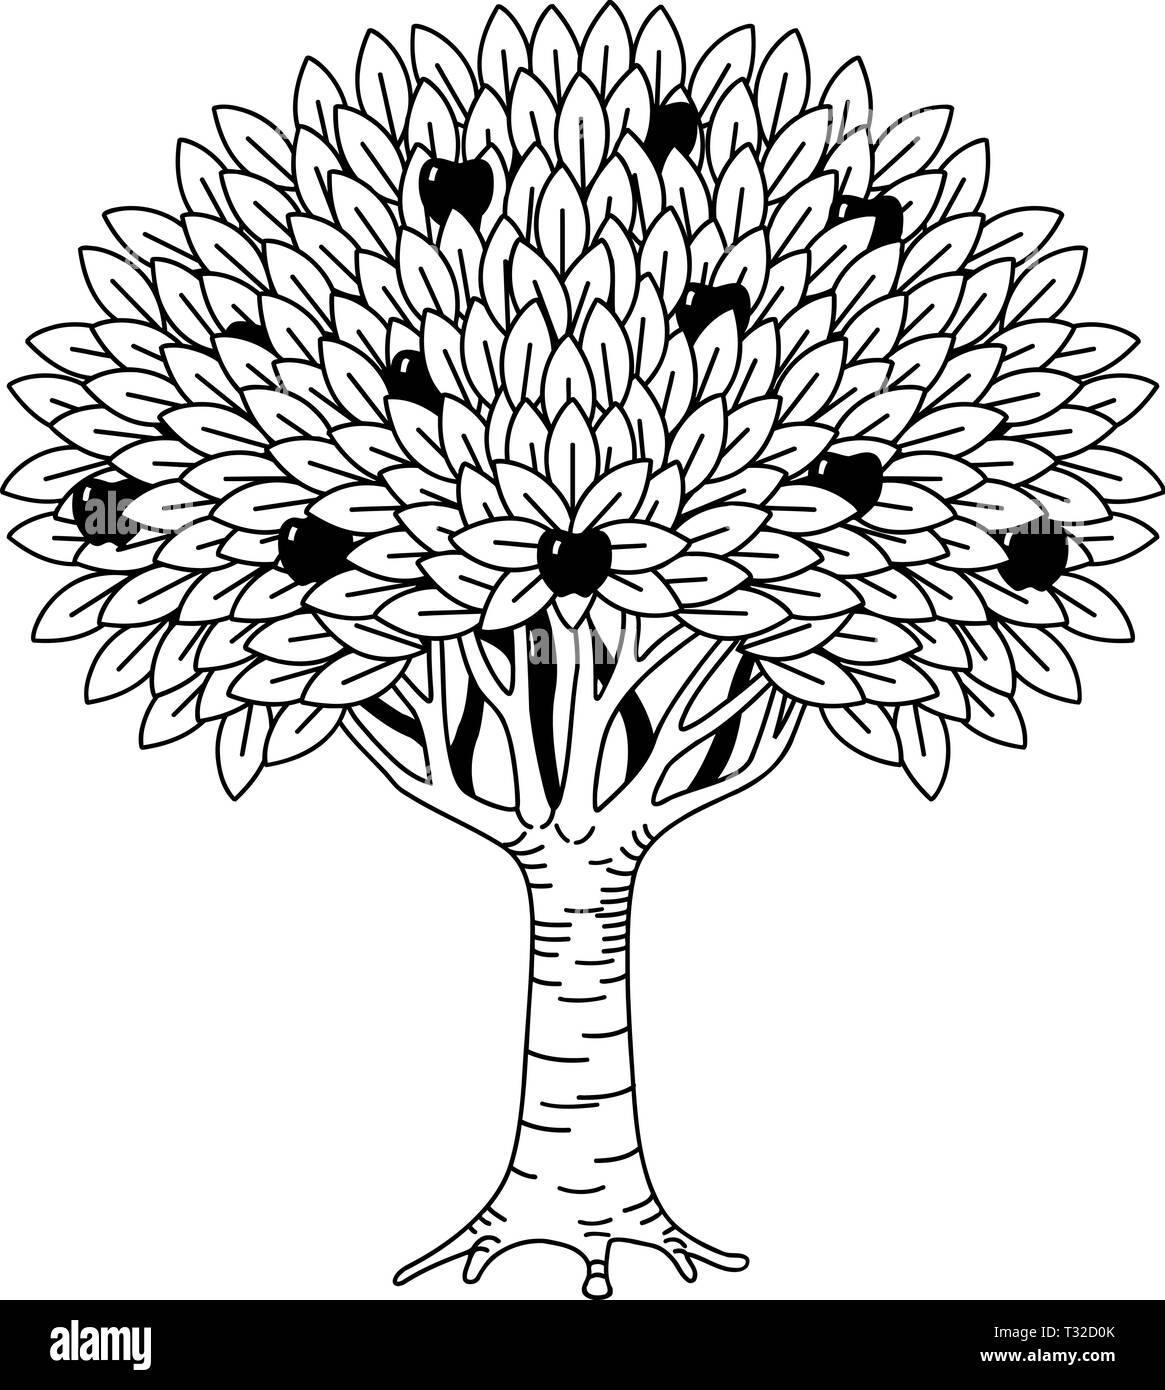 Fruit Tree Drawing Images  Free Download on Freepik